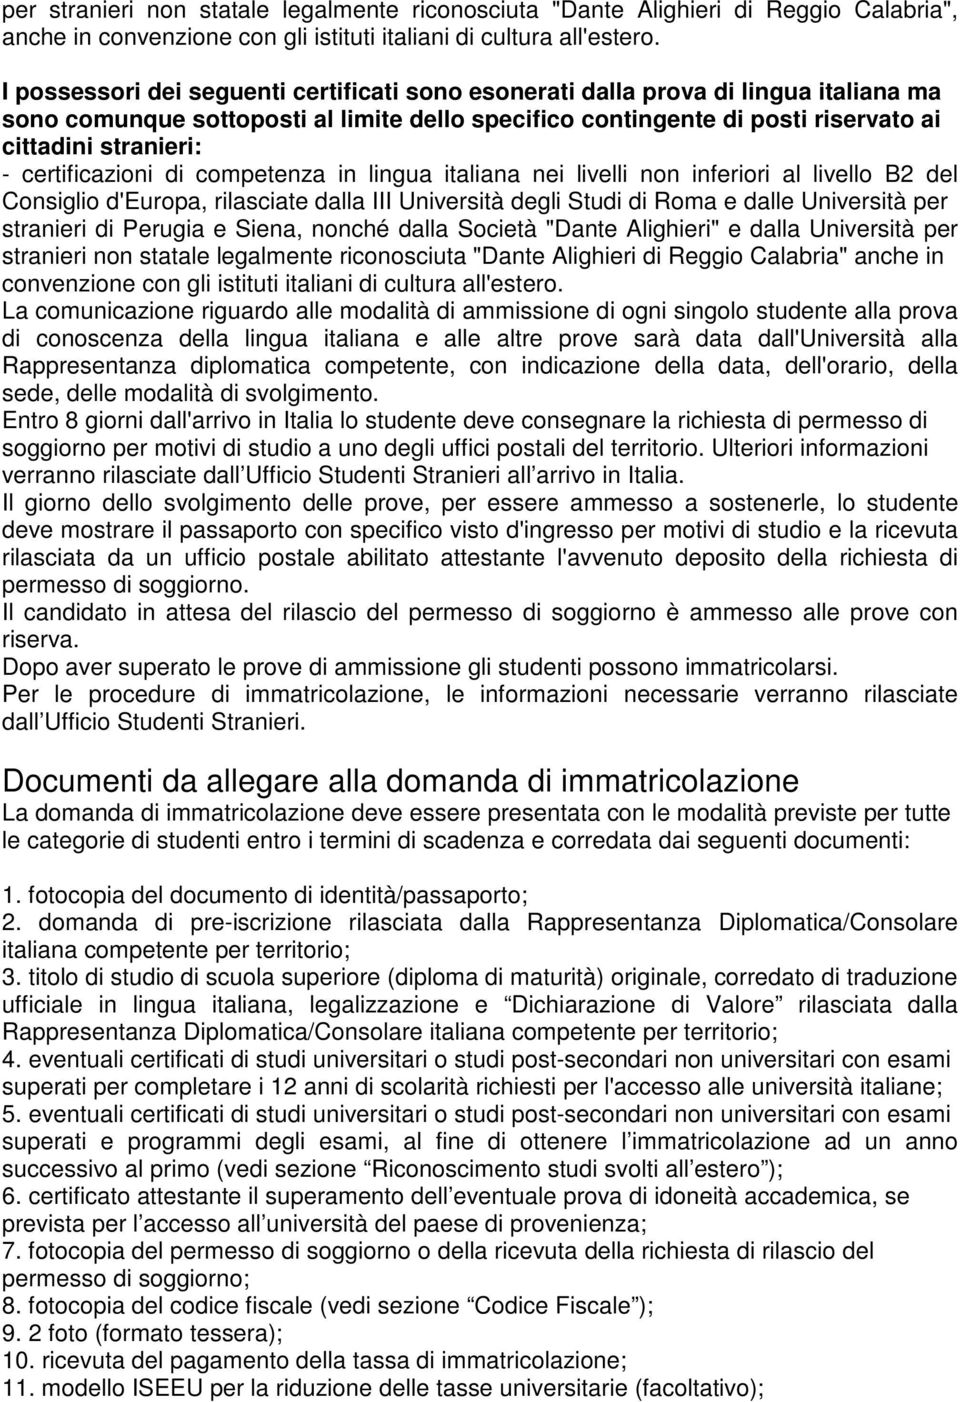 certificazioni di competenza in lingua italiana nei livelli non inferiori al livello B2 del Consiglio d'europa, rilasciate dalla III Università degli Studi di Roma e dalle Università per stranieri di